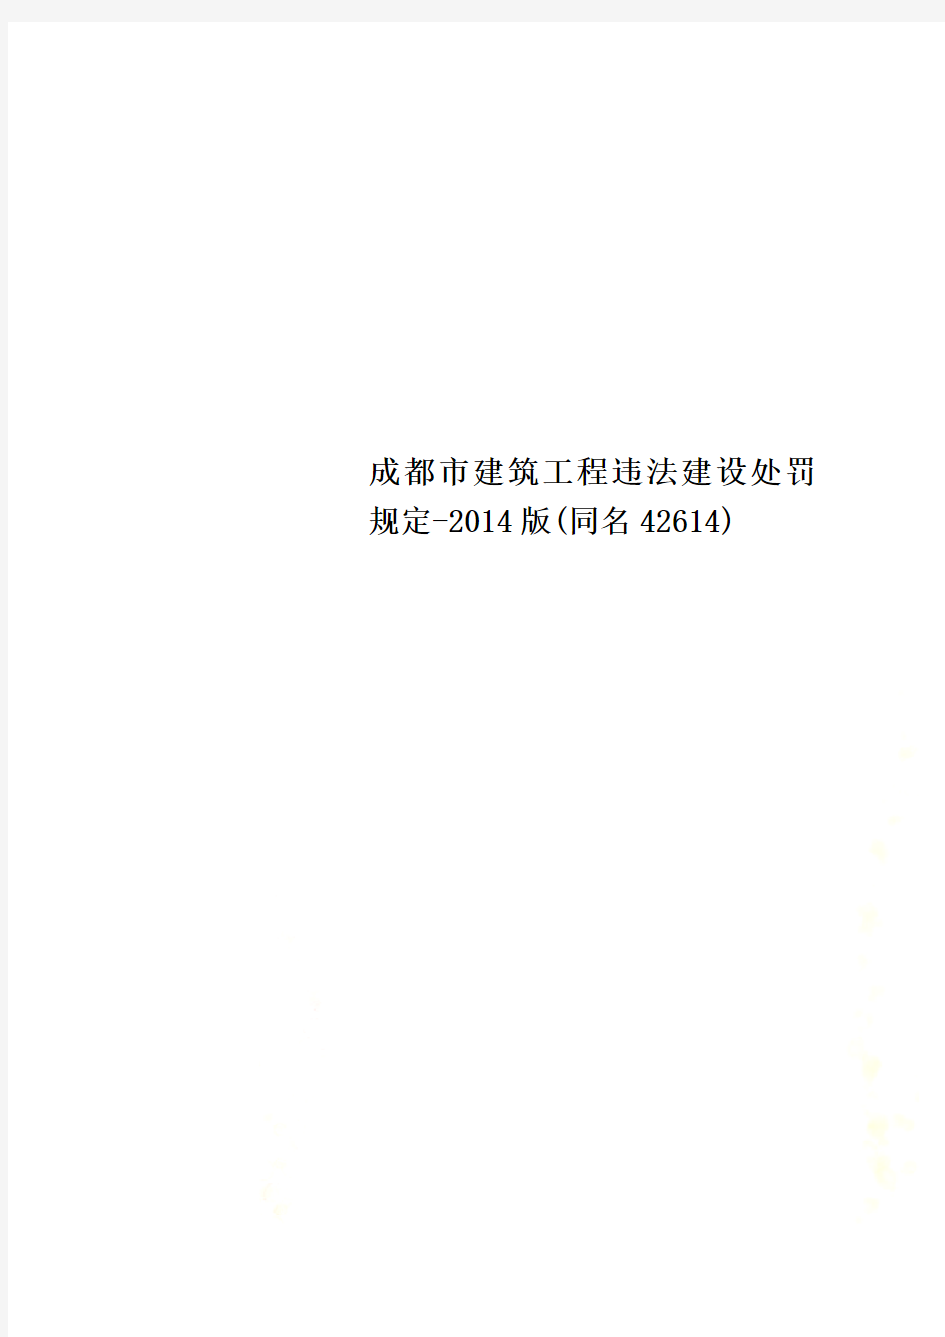 成都市建筑工程违法建设处罚规定-2014版(同名42614)